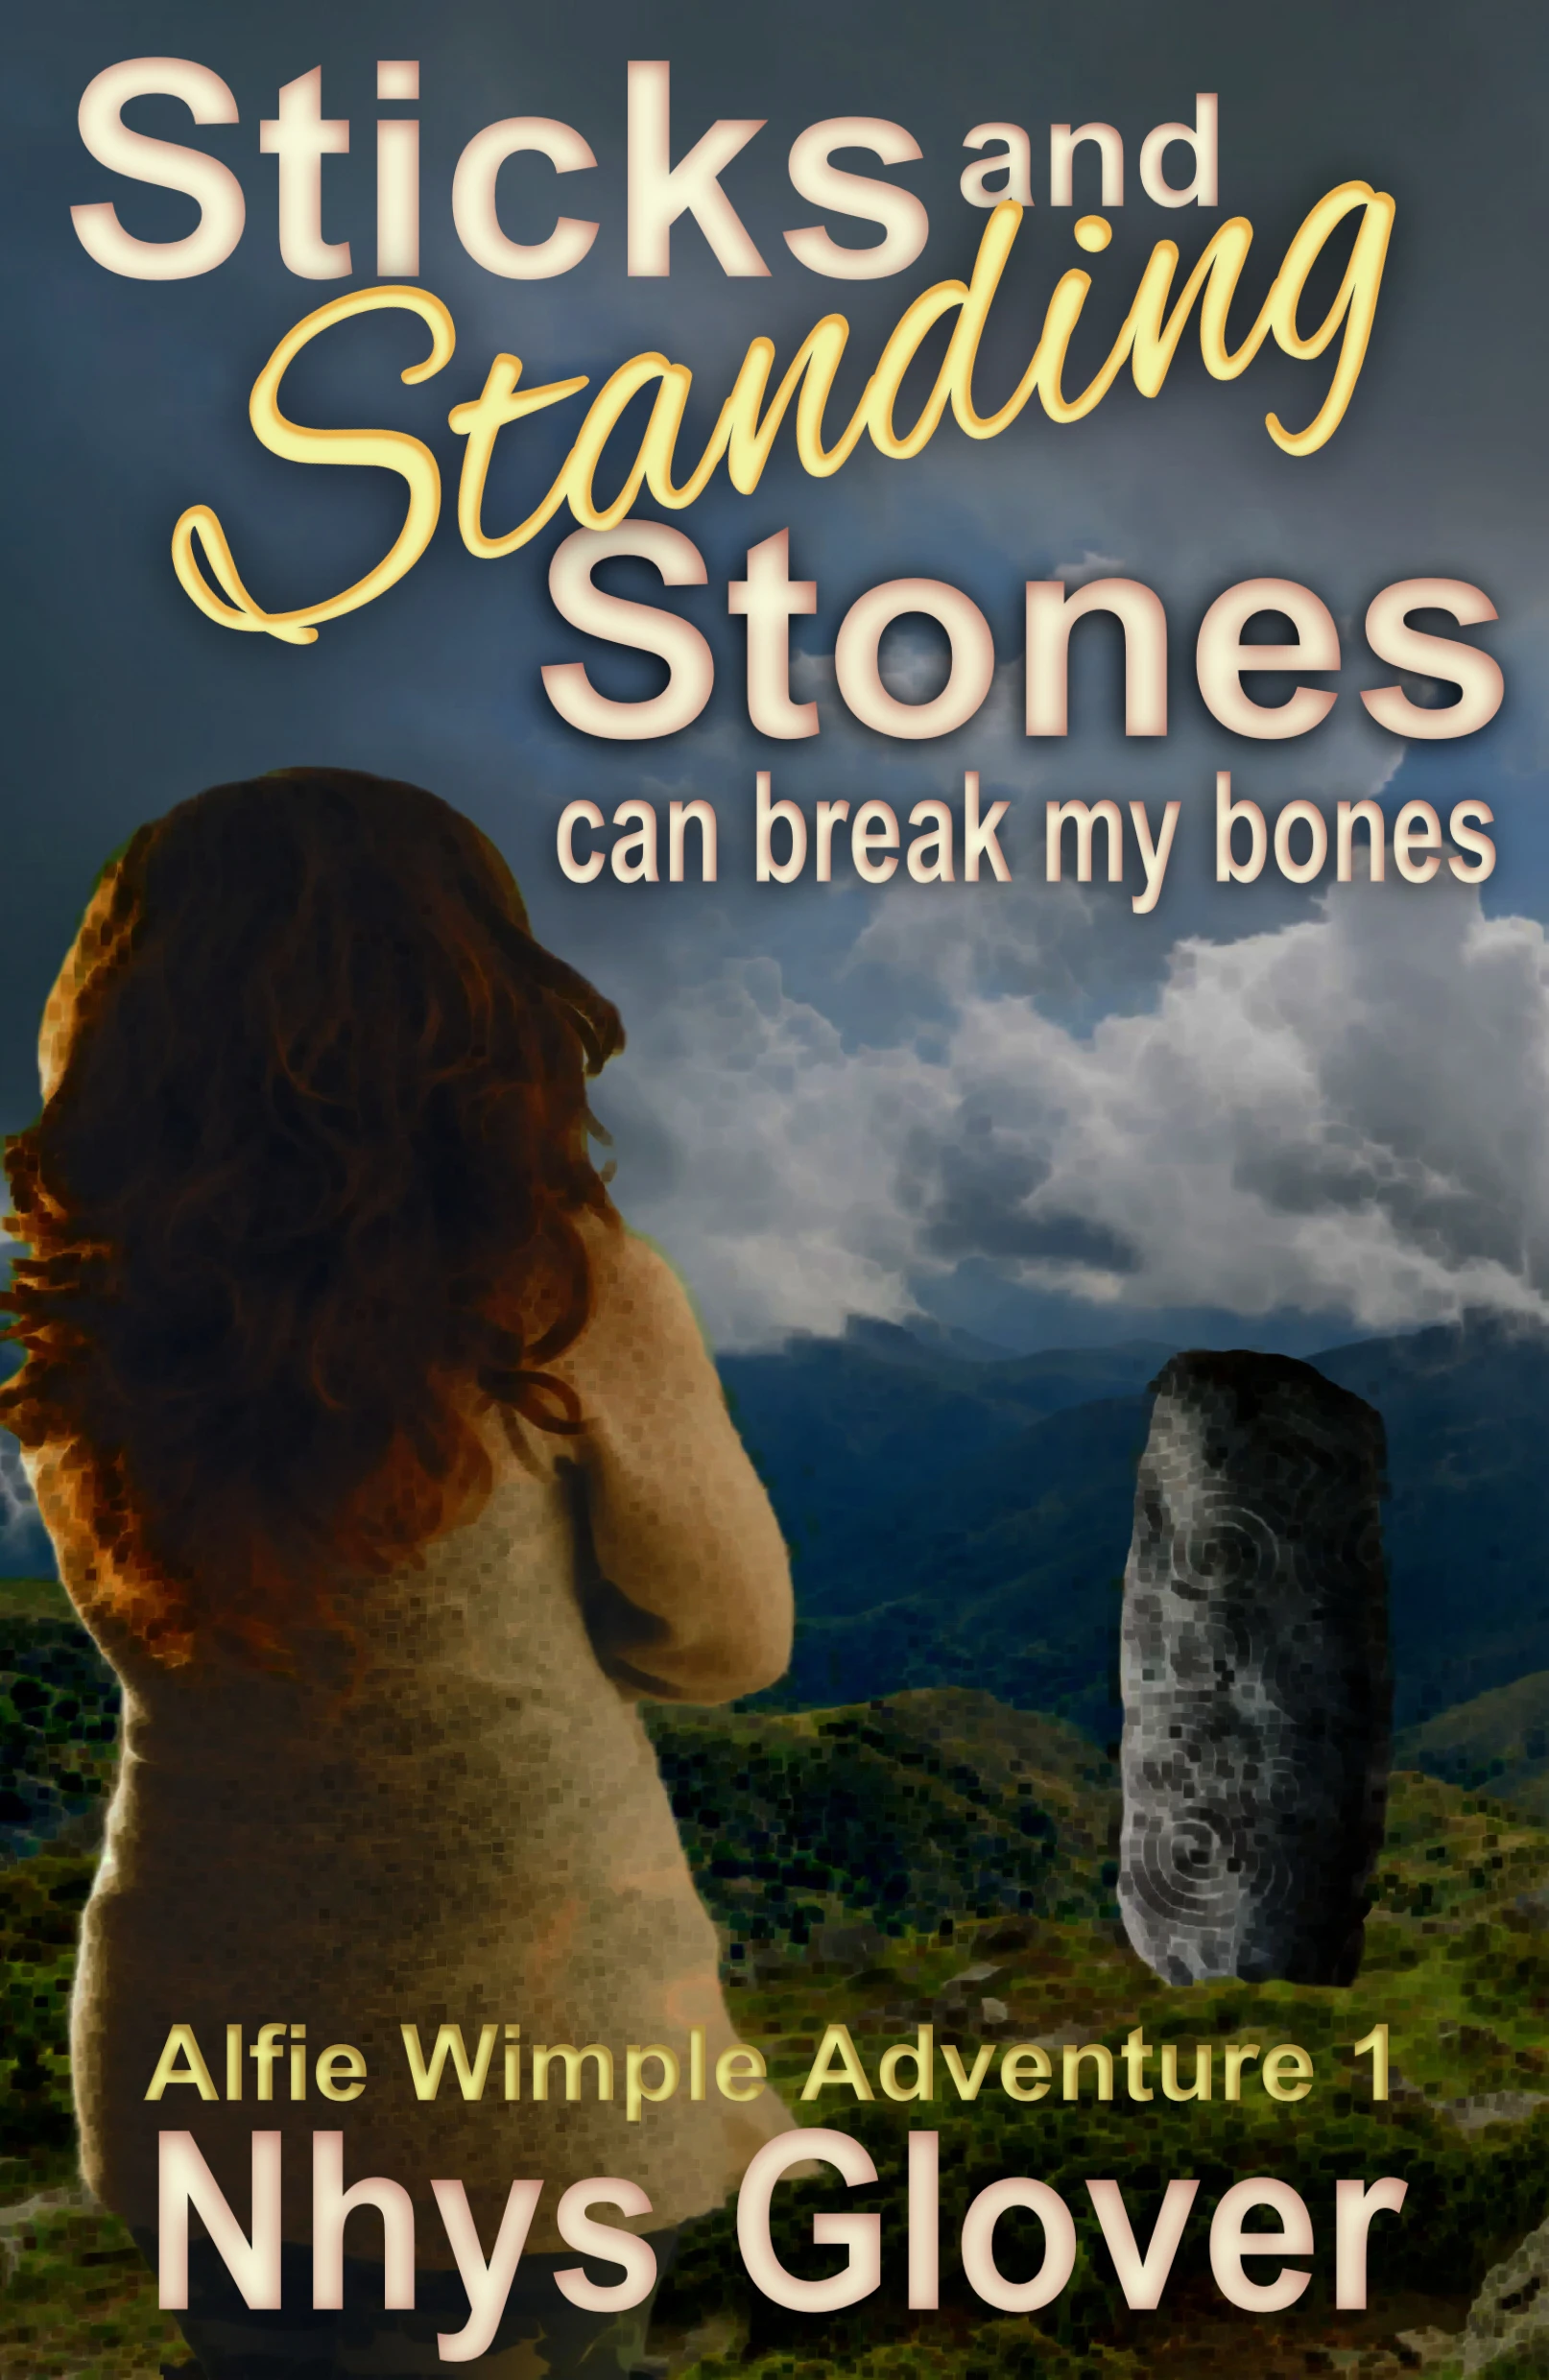 Sticks and Standing Stones Can Break Your Bones